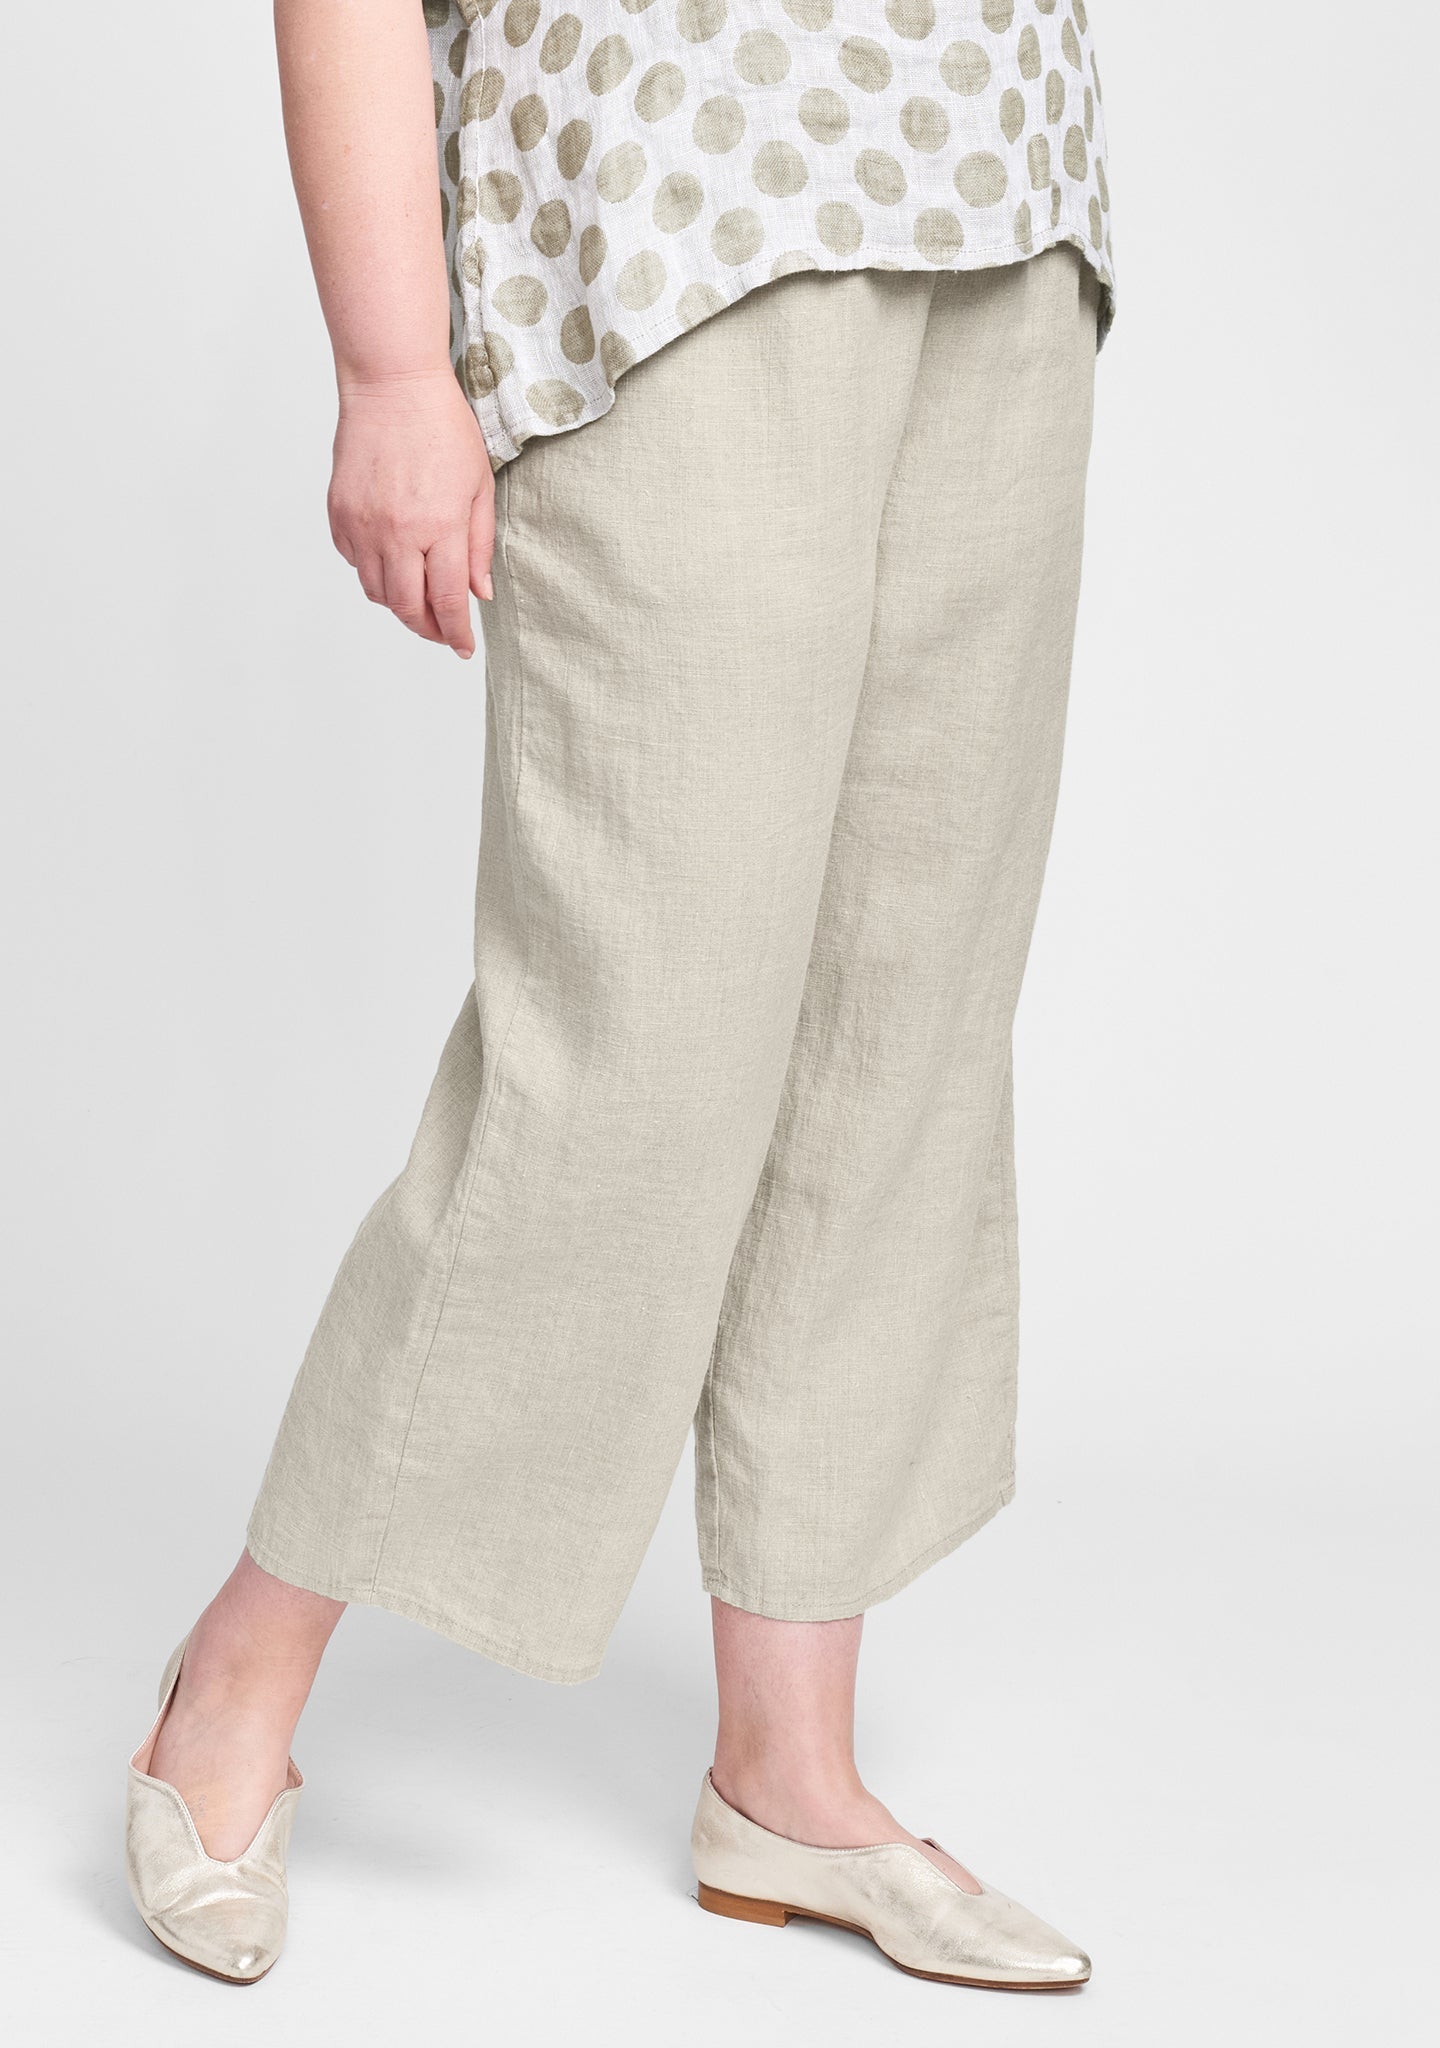 Cotton Linen Pants With Elastic Waist - boddysize